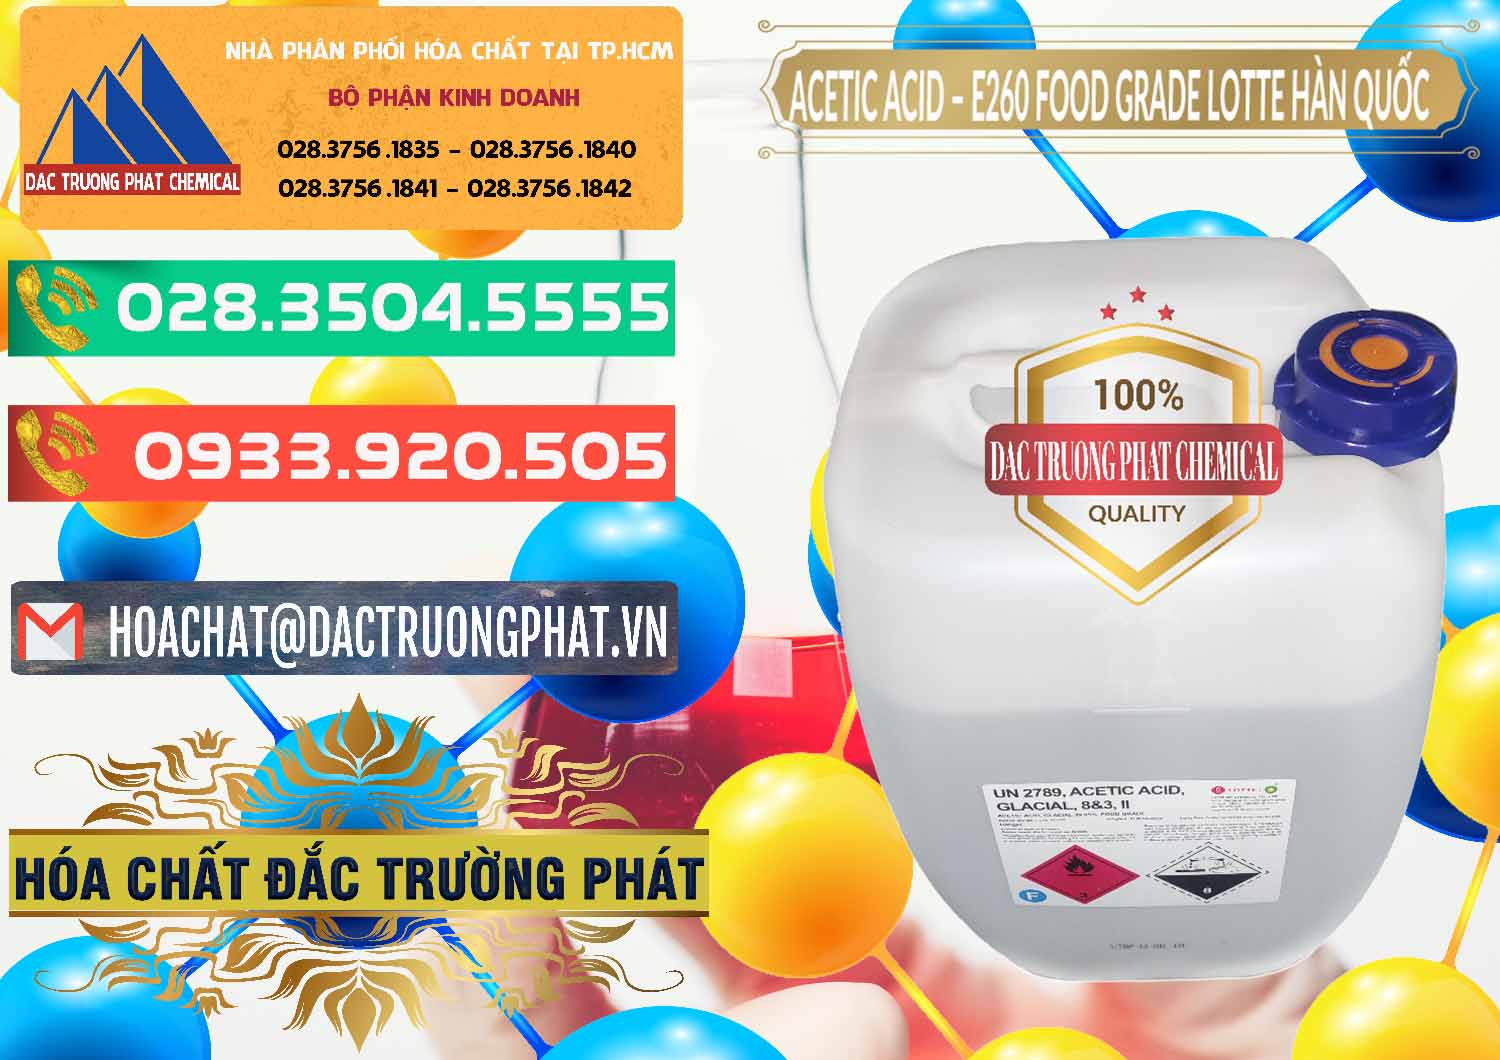 Nơi chuyên cung cấp ( bán ) Acetic Acid – Axit Acetic E260 Food Grade Hàn Quốc Lotte Korea - 0003 - Công ty chuyên kinh doanh _ phân phối hóa chất tại TP.HCM - congtyhoachat.com.vn